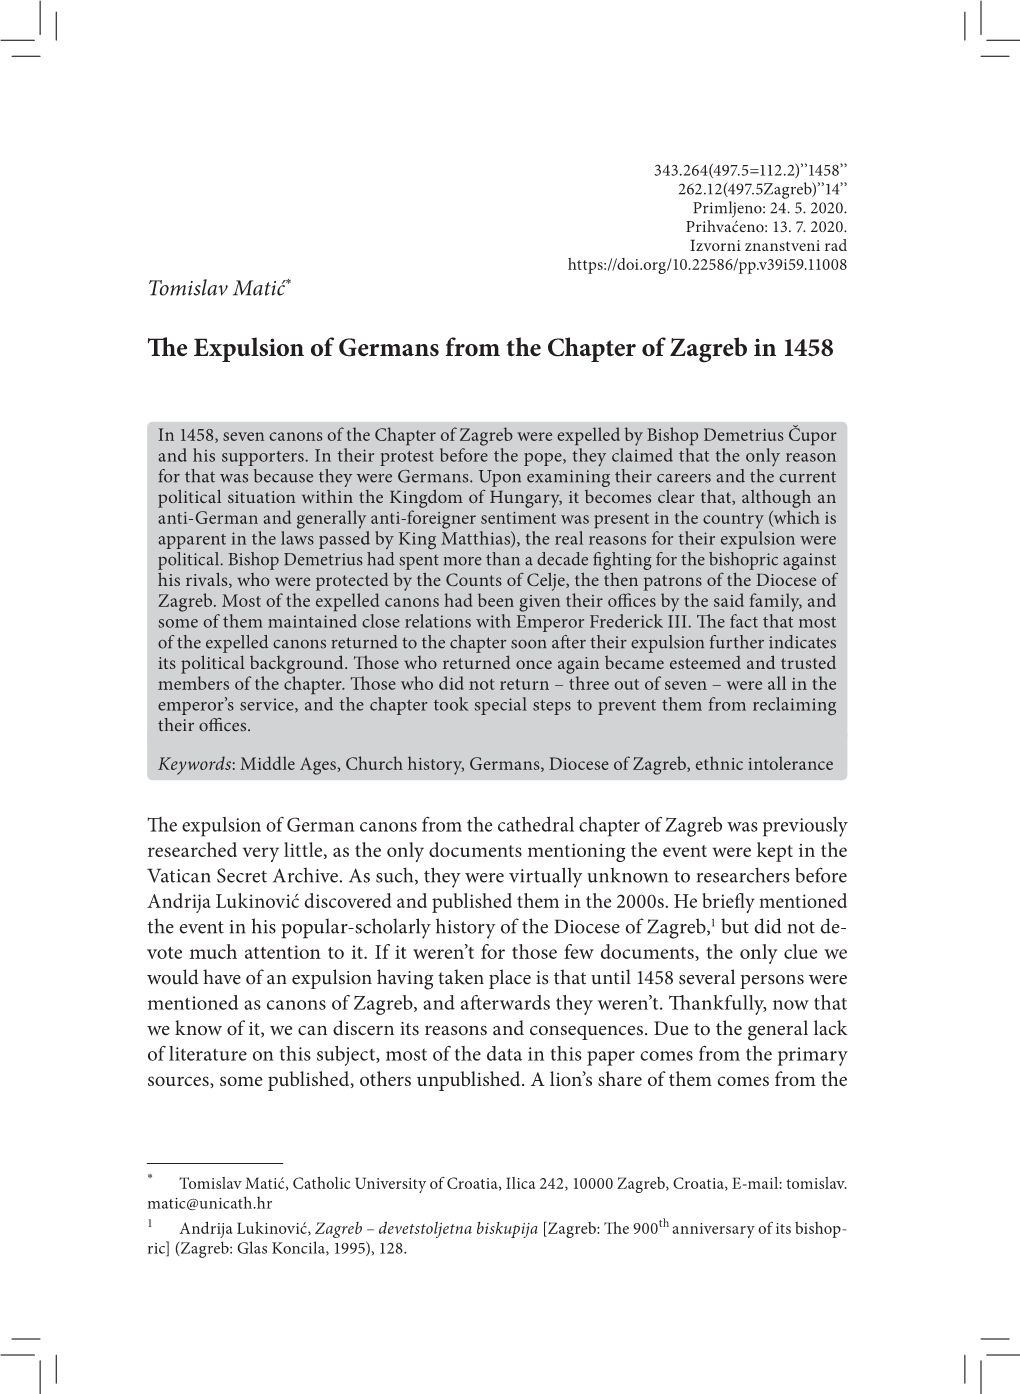 Puni Tekst: Engleski, Pdf (229